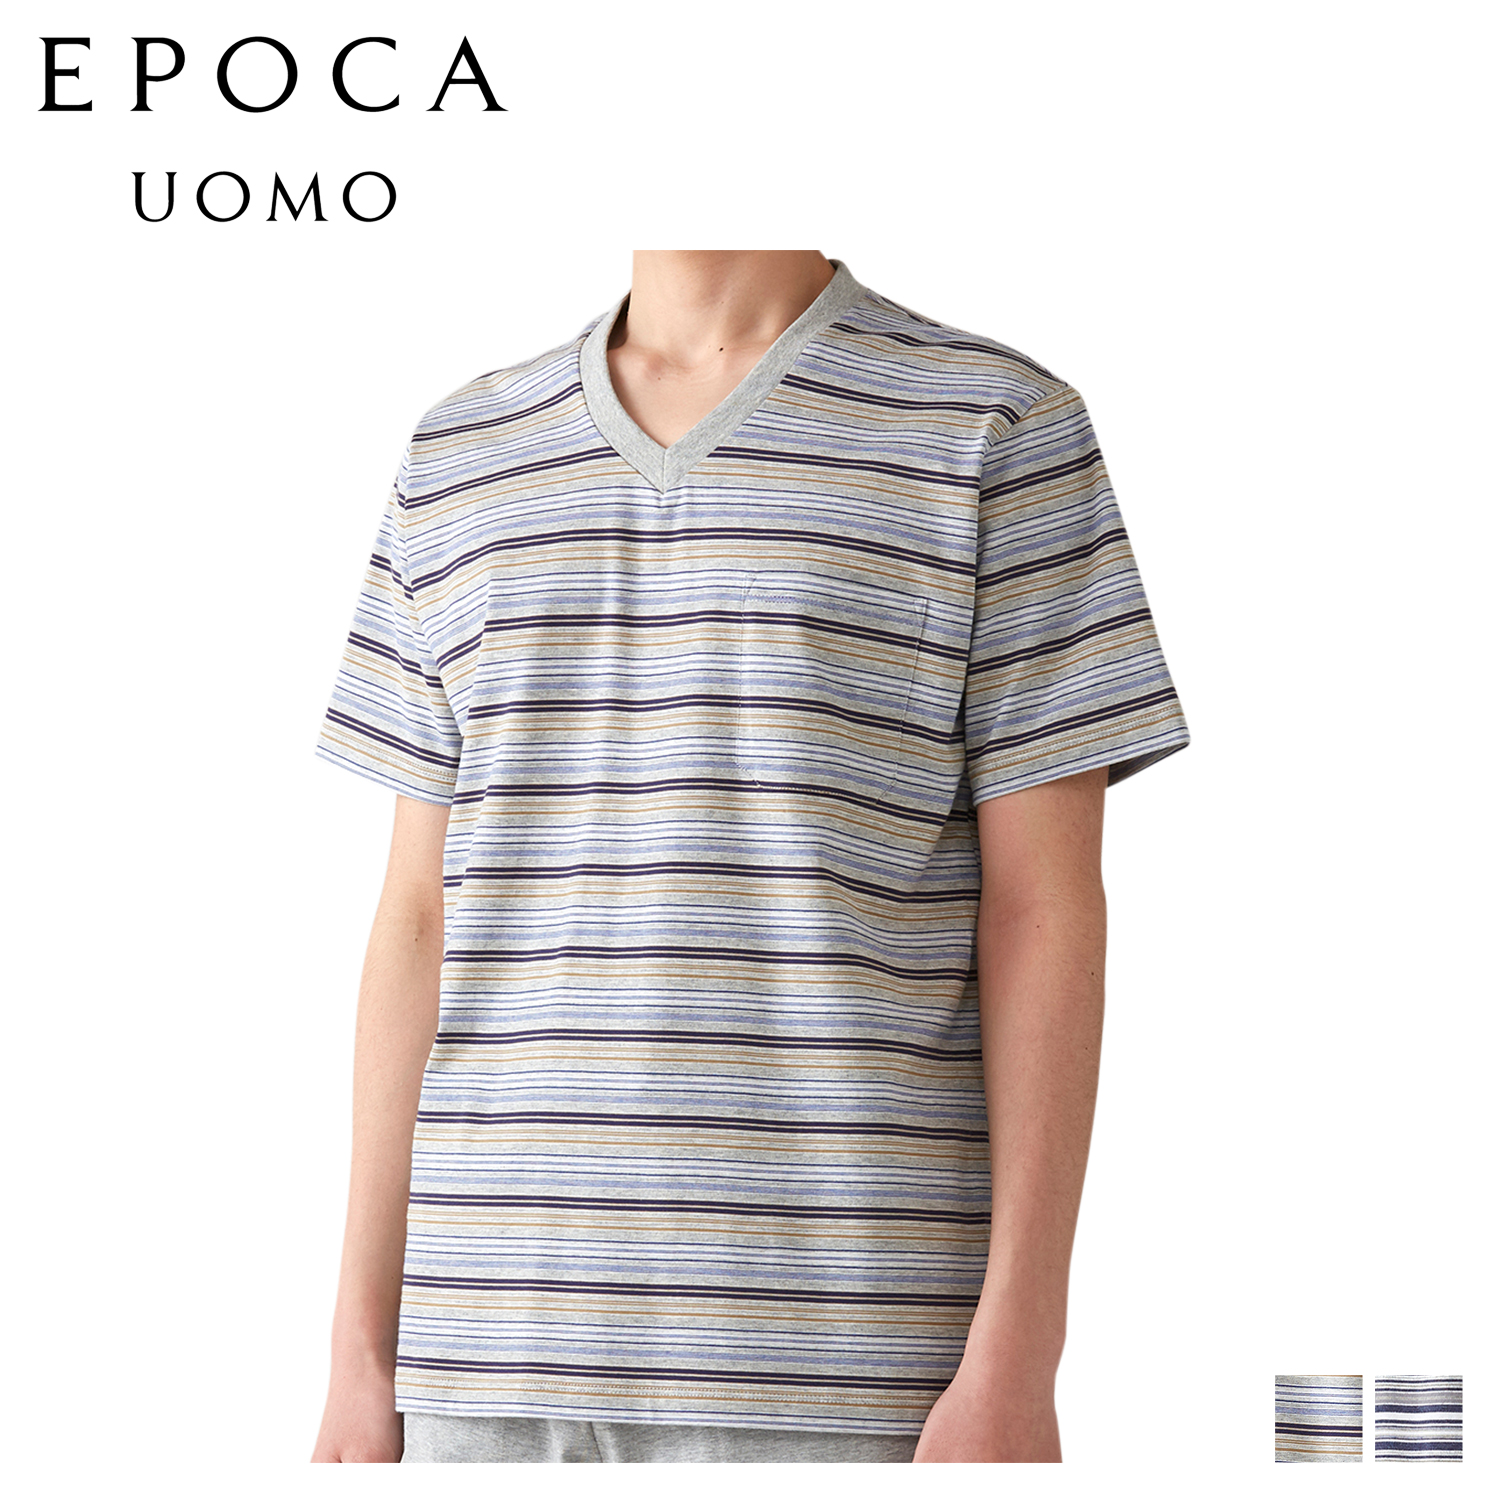 エポカ ウォモ EPOCA UOMO Tシャツ 半袖 カットソー メンズ Vネック